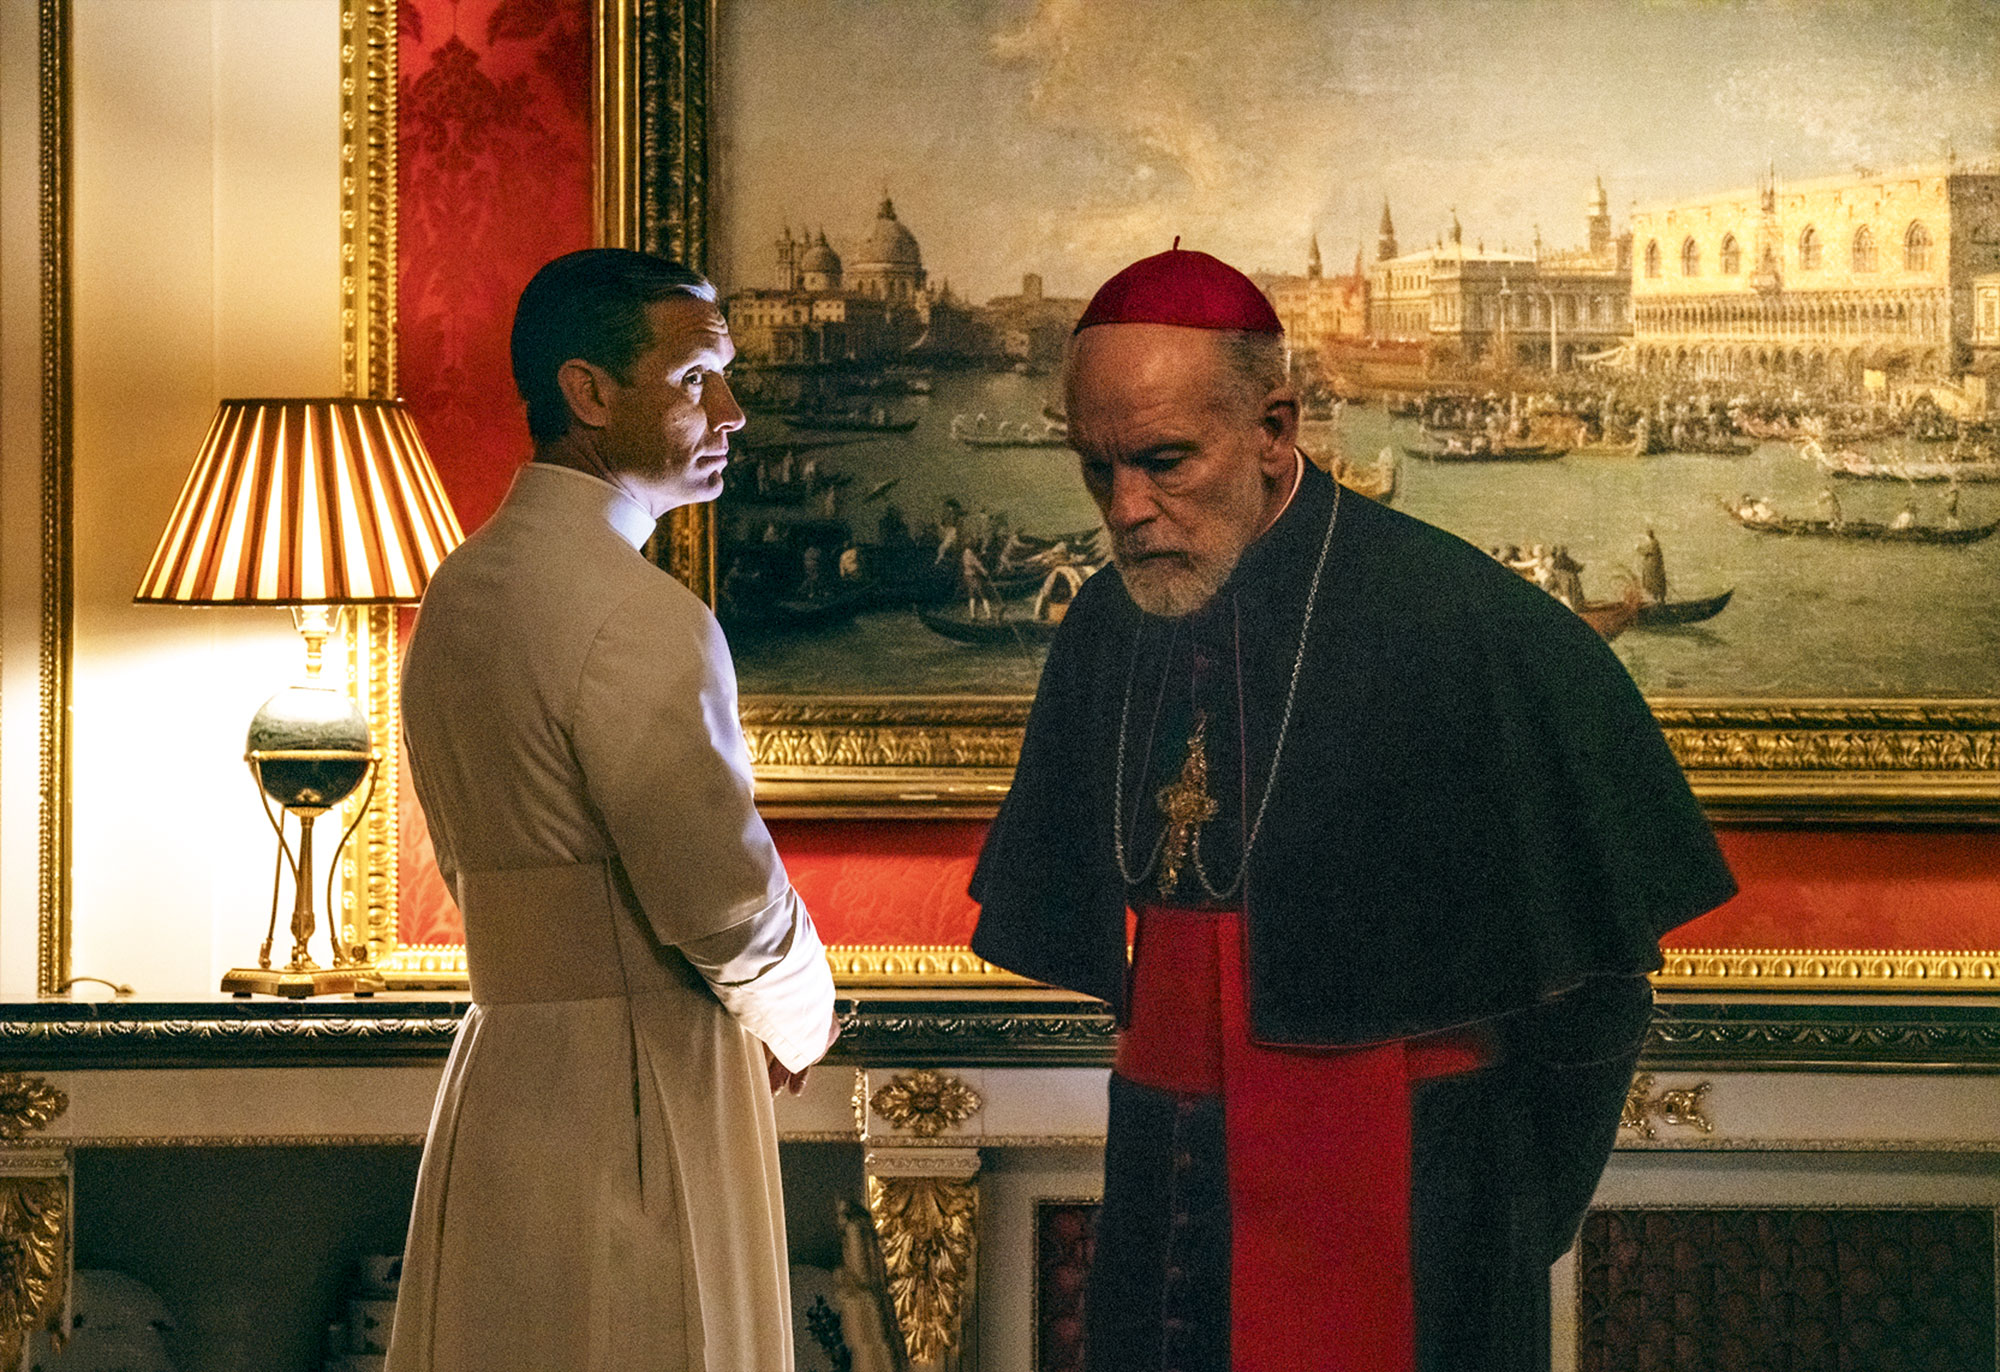 И «Молодой папа», и «Новый папа» — о том, что даже папа может сомневаться